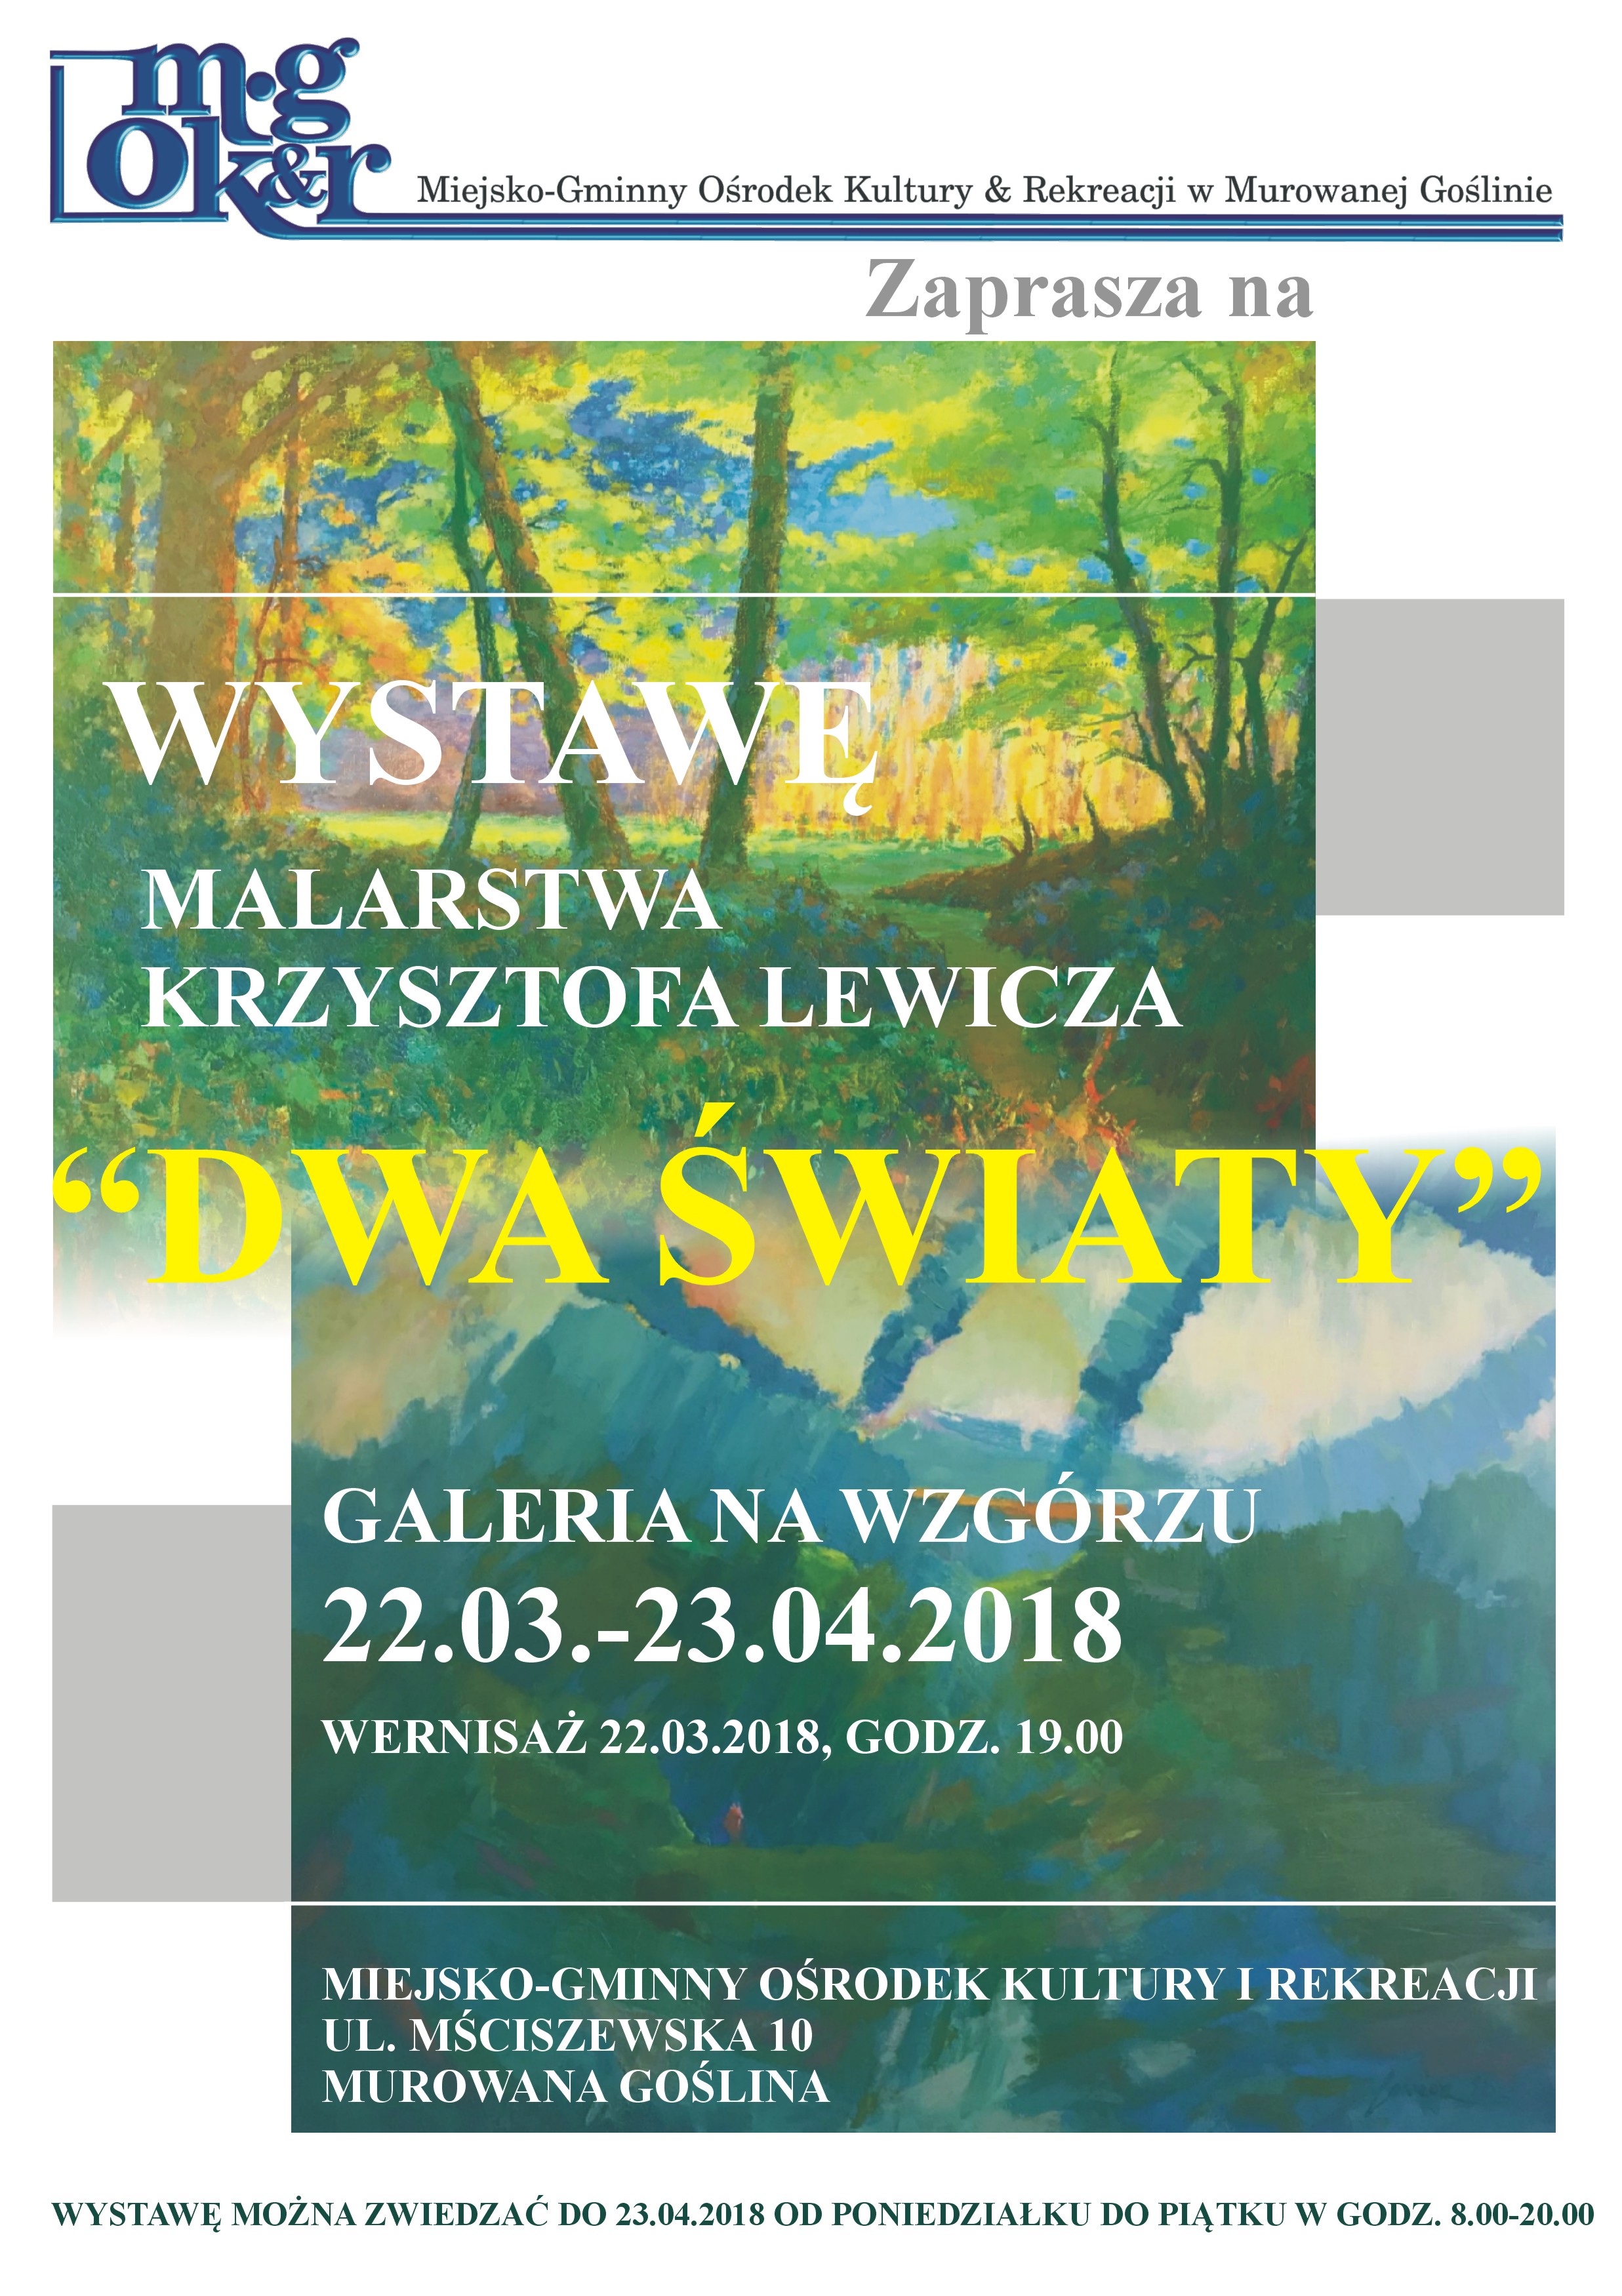 Dwa Światy - wystawa malarstwa Krzysztofa Lewicza